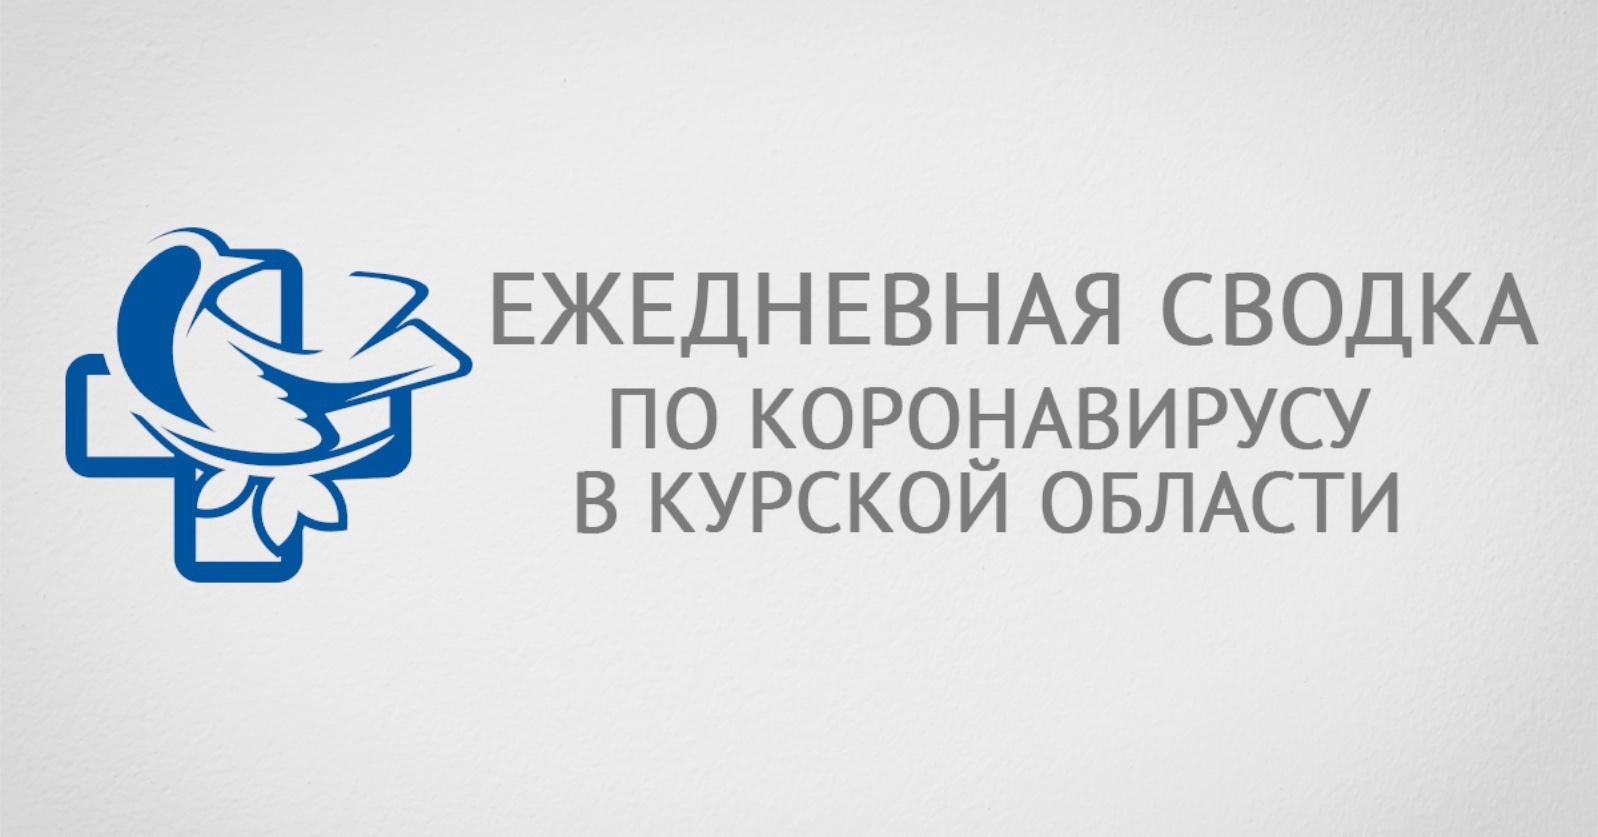 В Курской области зафиксировано 41 заражение коронавирусом за последние сутки